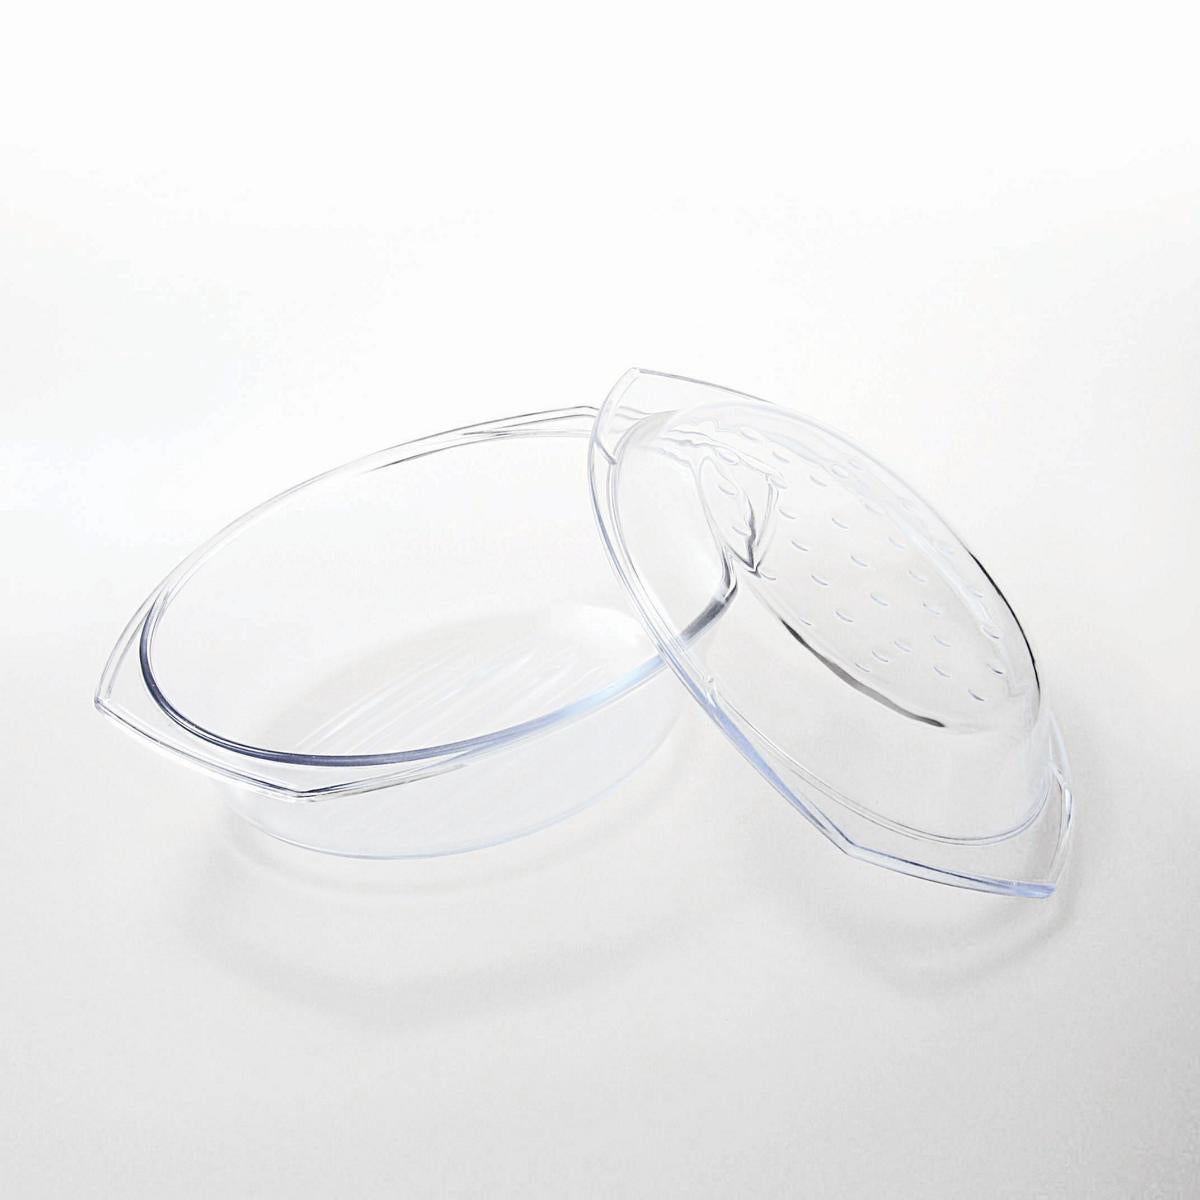 Glasbräter 2,9 L mit Deckel Auflaufform Bratschüssel Dropsystem Glas Made in EU